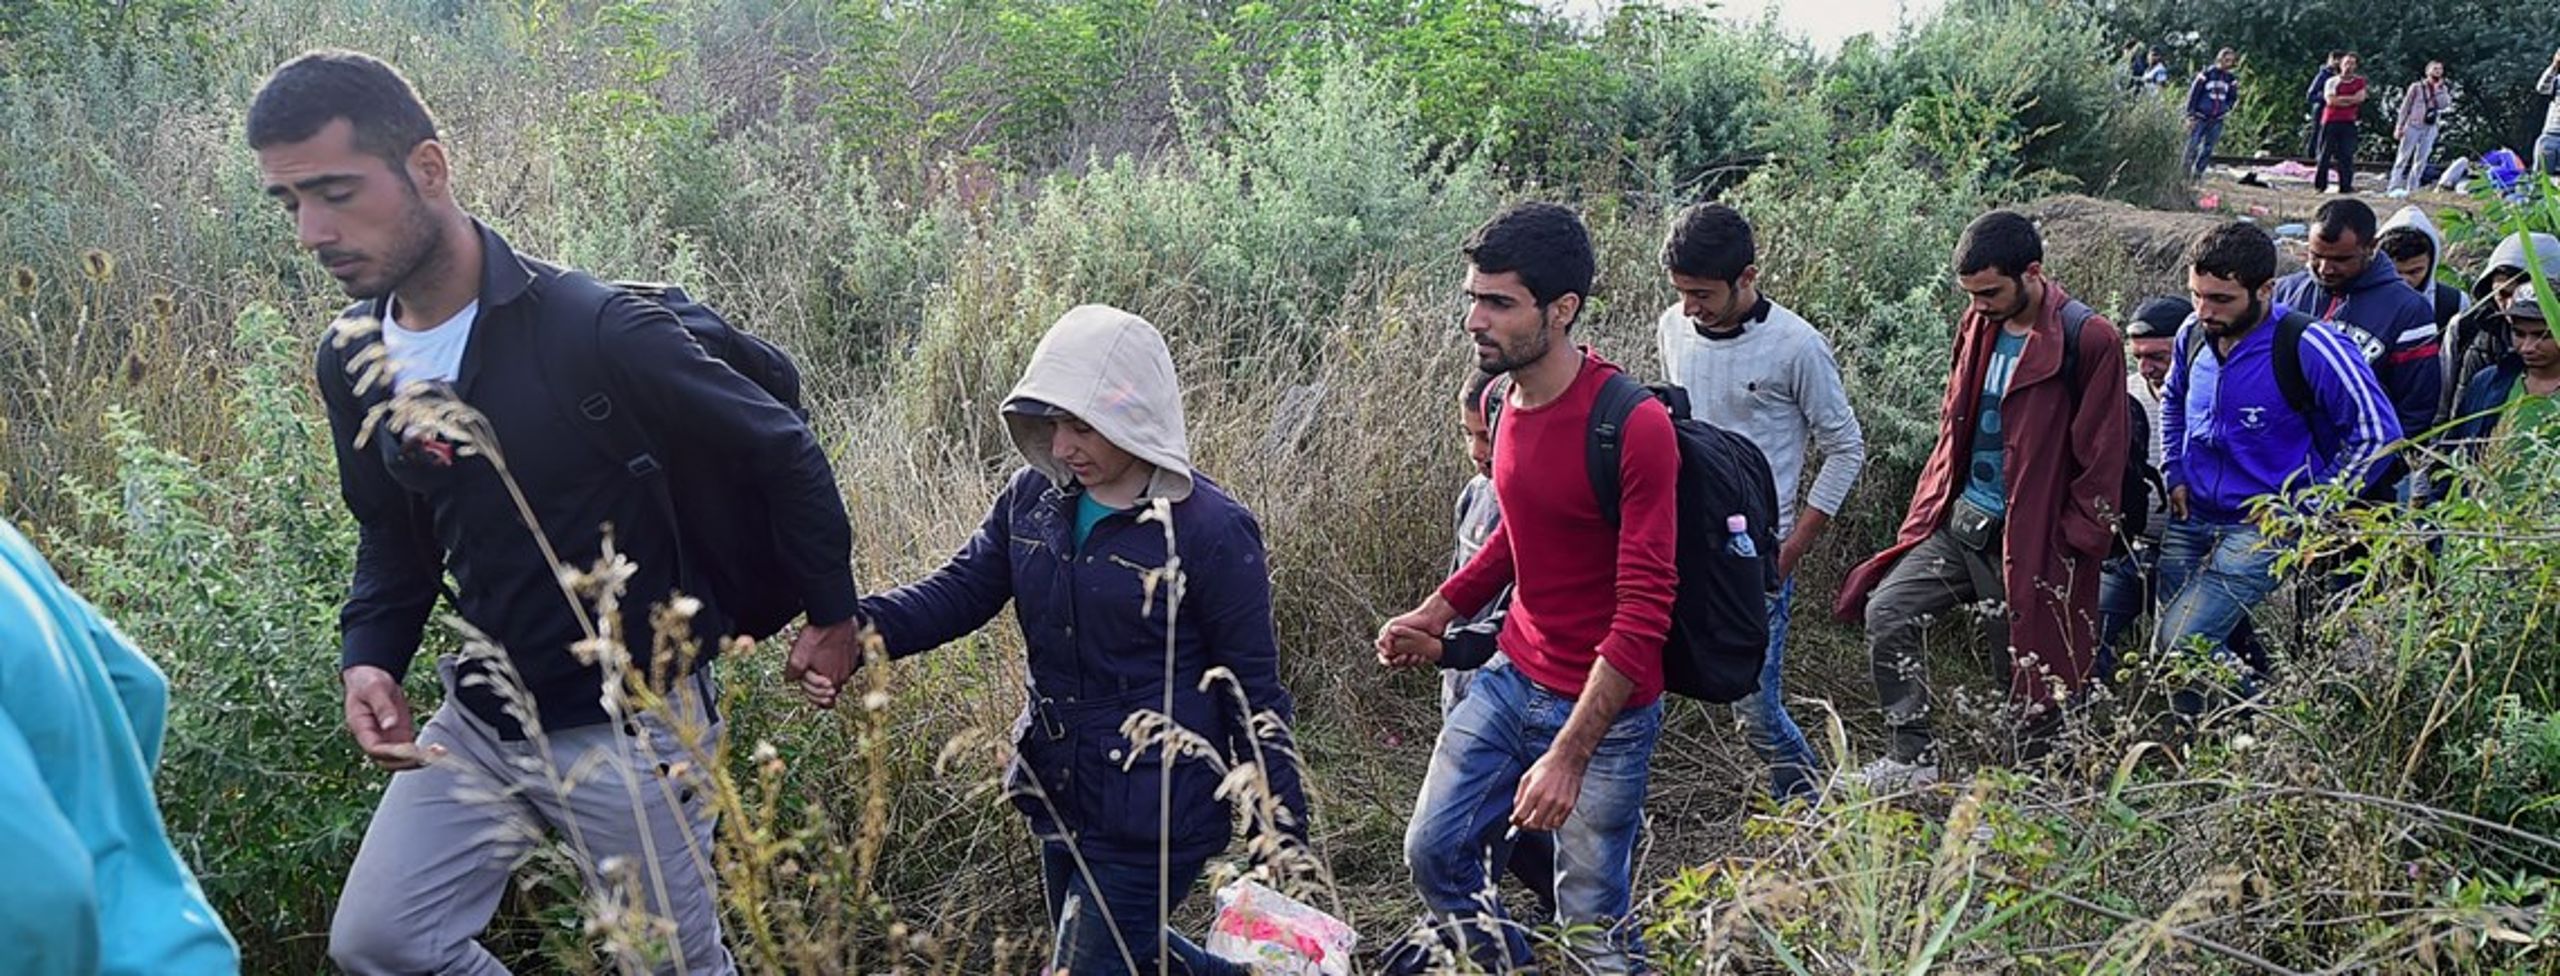 Flygtninge på vej over den serbisk-ungarske grænse via den såkaldte Balkan-rute.<br>